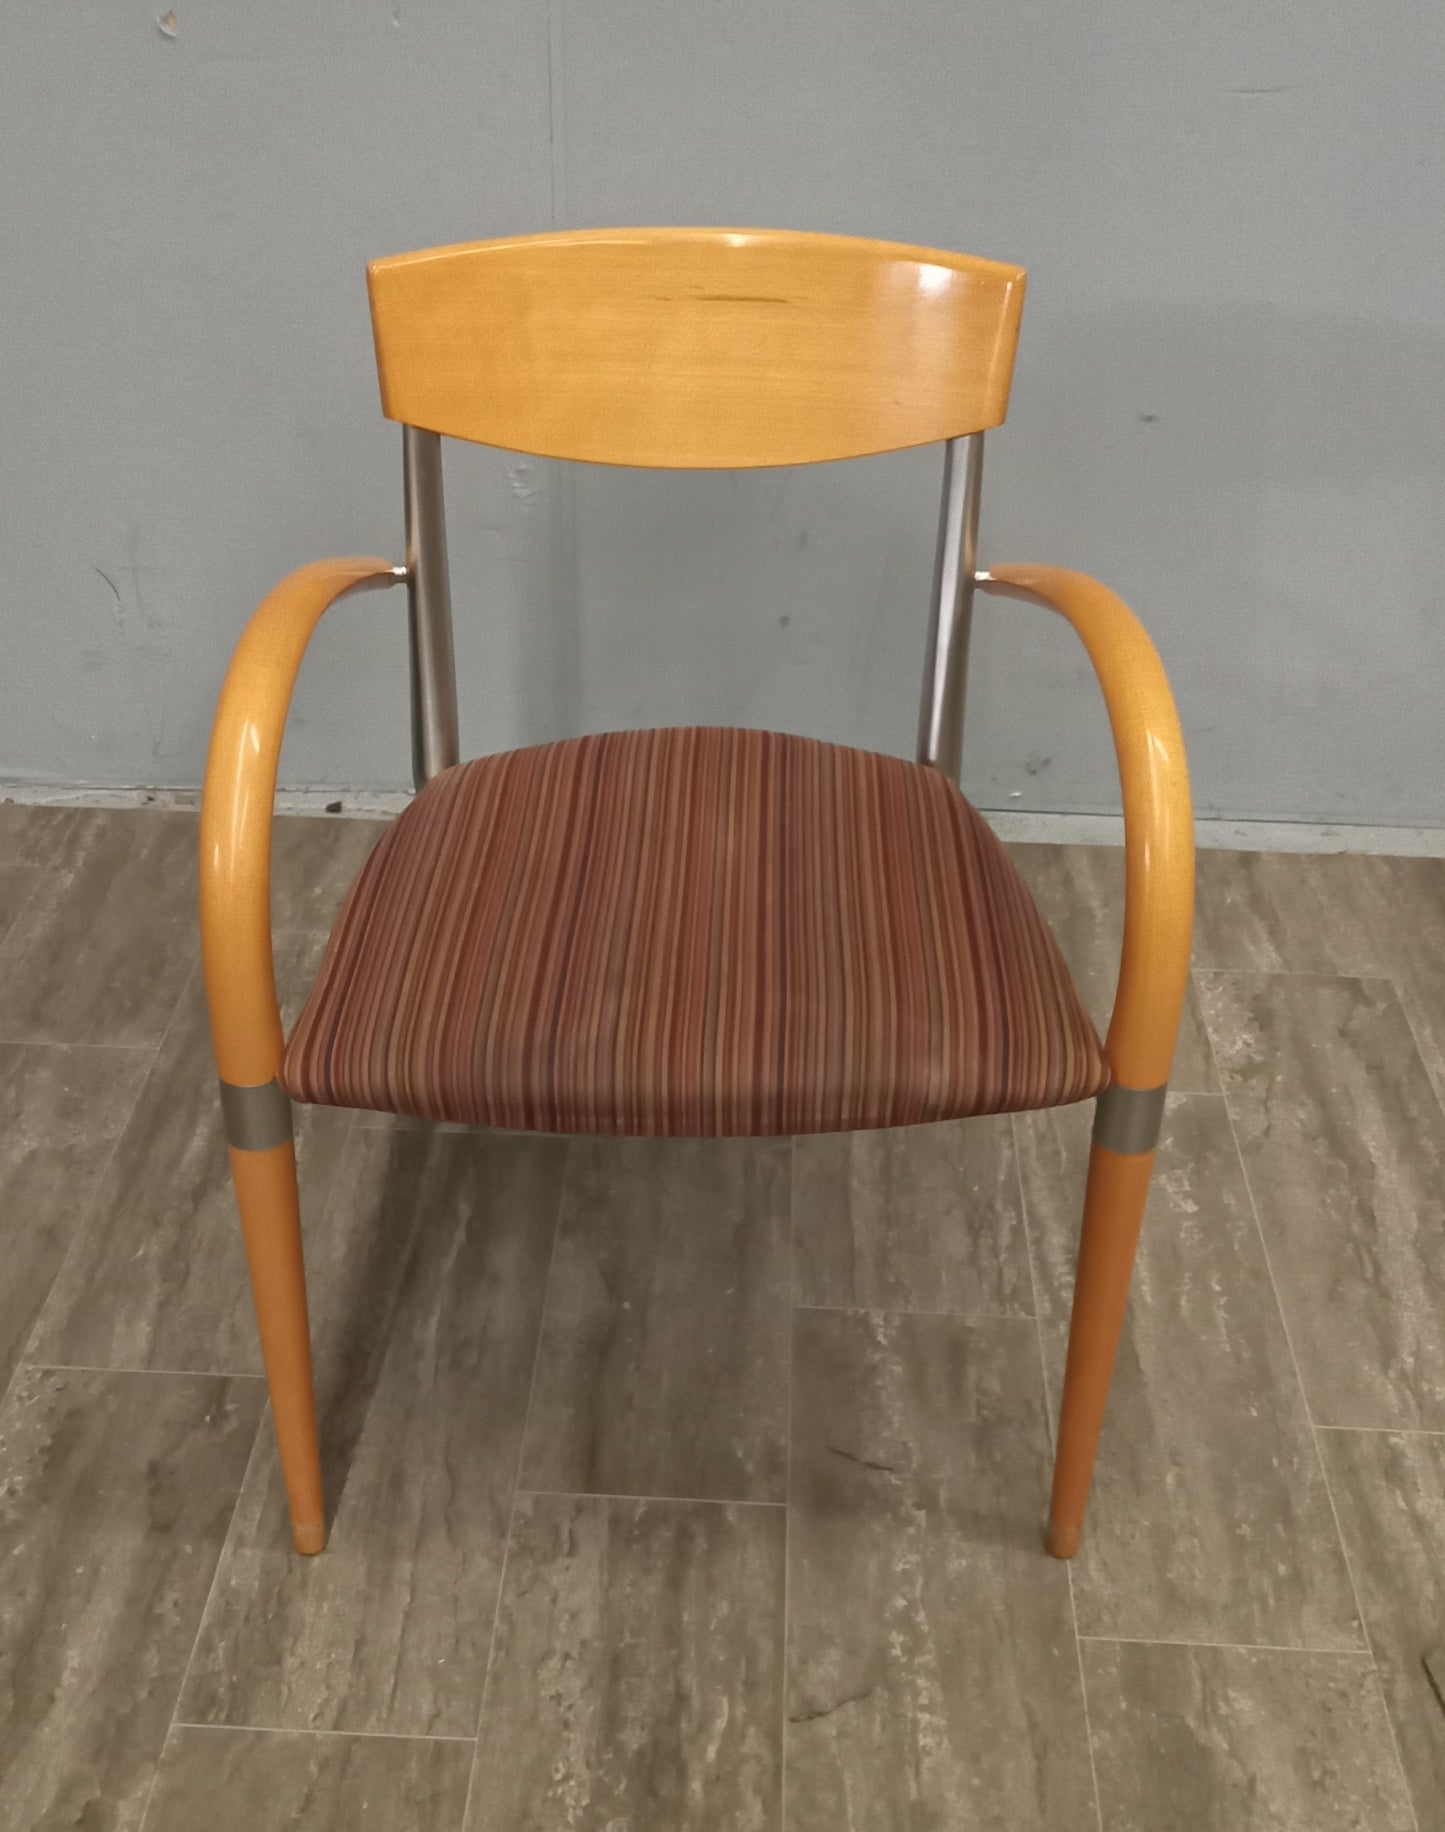 Chair - Arm